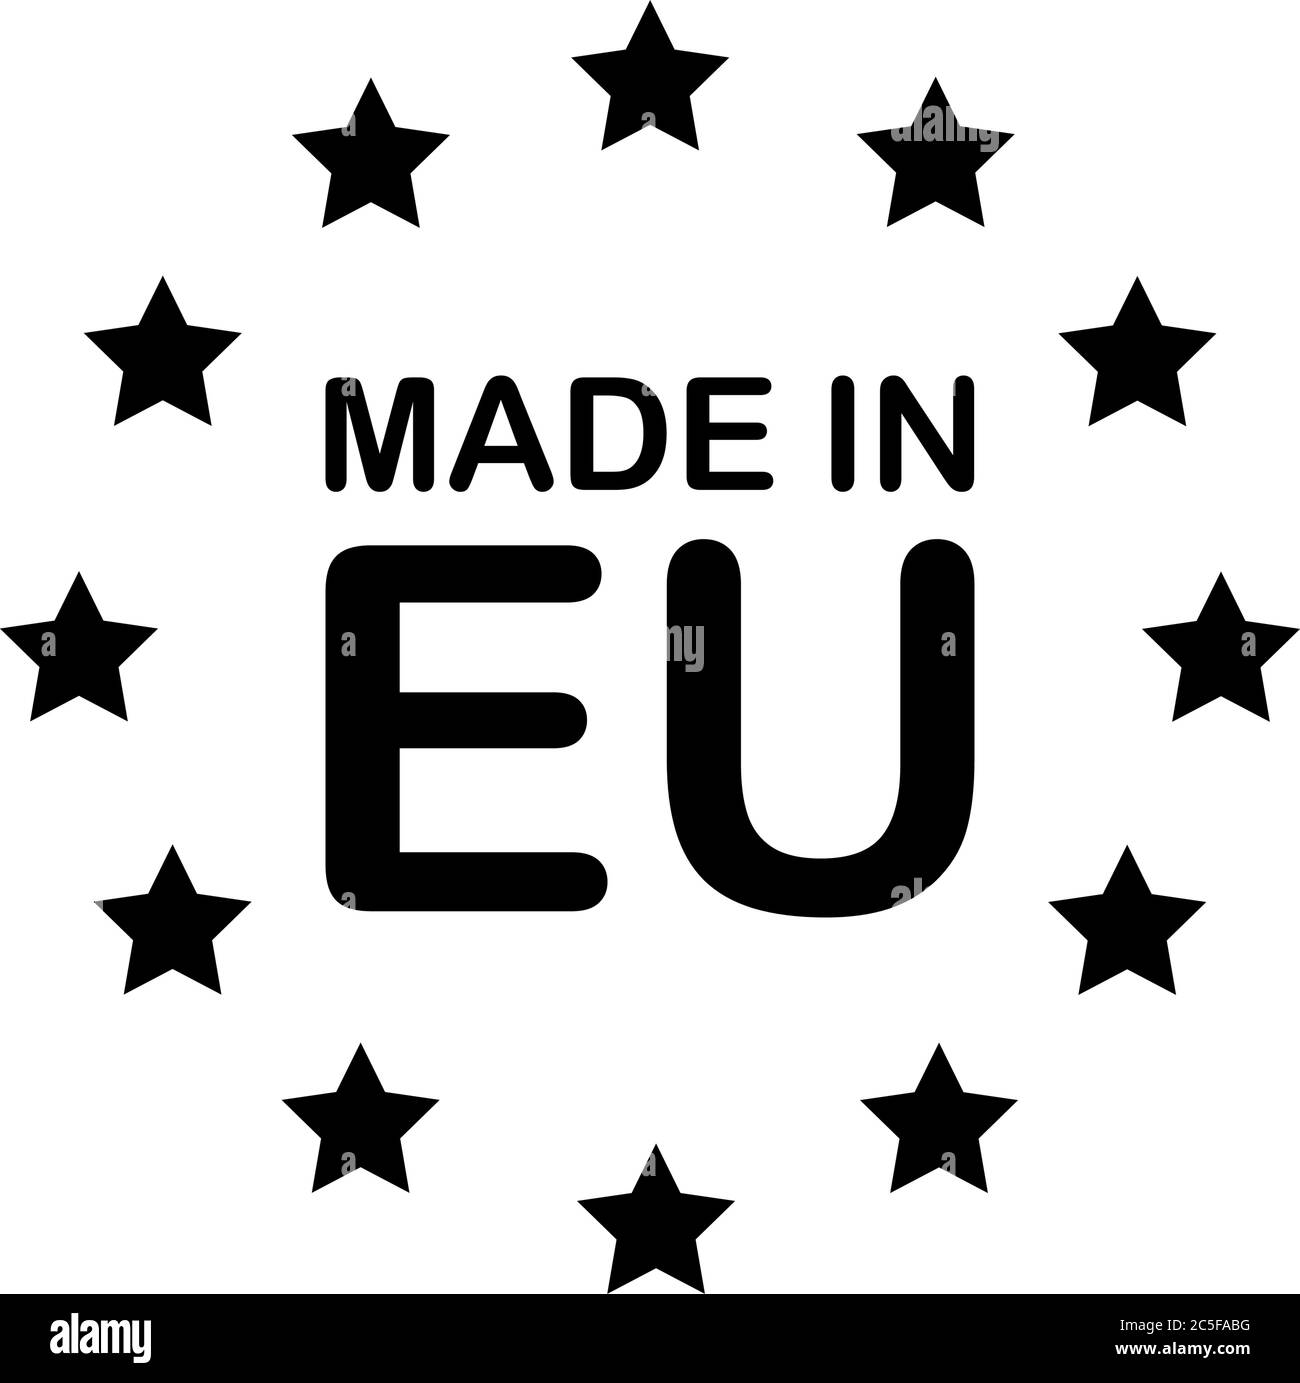 REALIZZATO IN testo nero e stelle UE. Immagine vettoriale del segno del prodotto europeo isolata su sfondo bianco Illustrazione Vettoriale